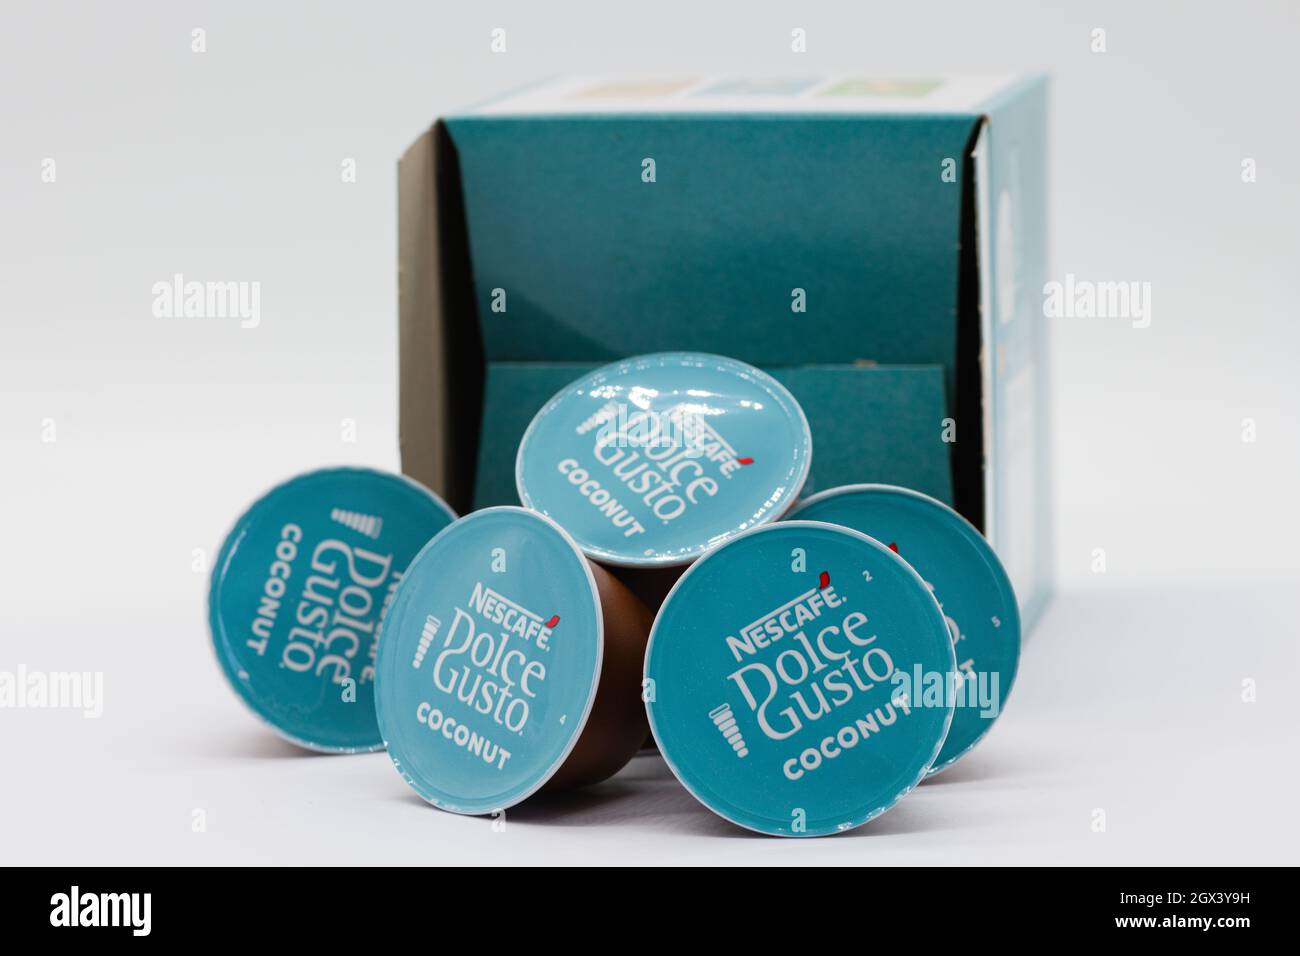 Irvine, Schottland, Großbritannien - 29. September 2021: Eine Schachtel weißer Kokosnuss-Kaffeepads der Marke Nescafe Dolce-Gusto in recycelbaren Verpackungen, in denen die Stockfoto